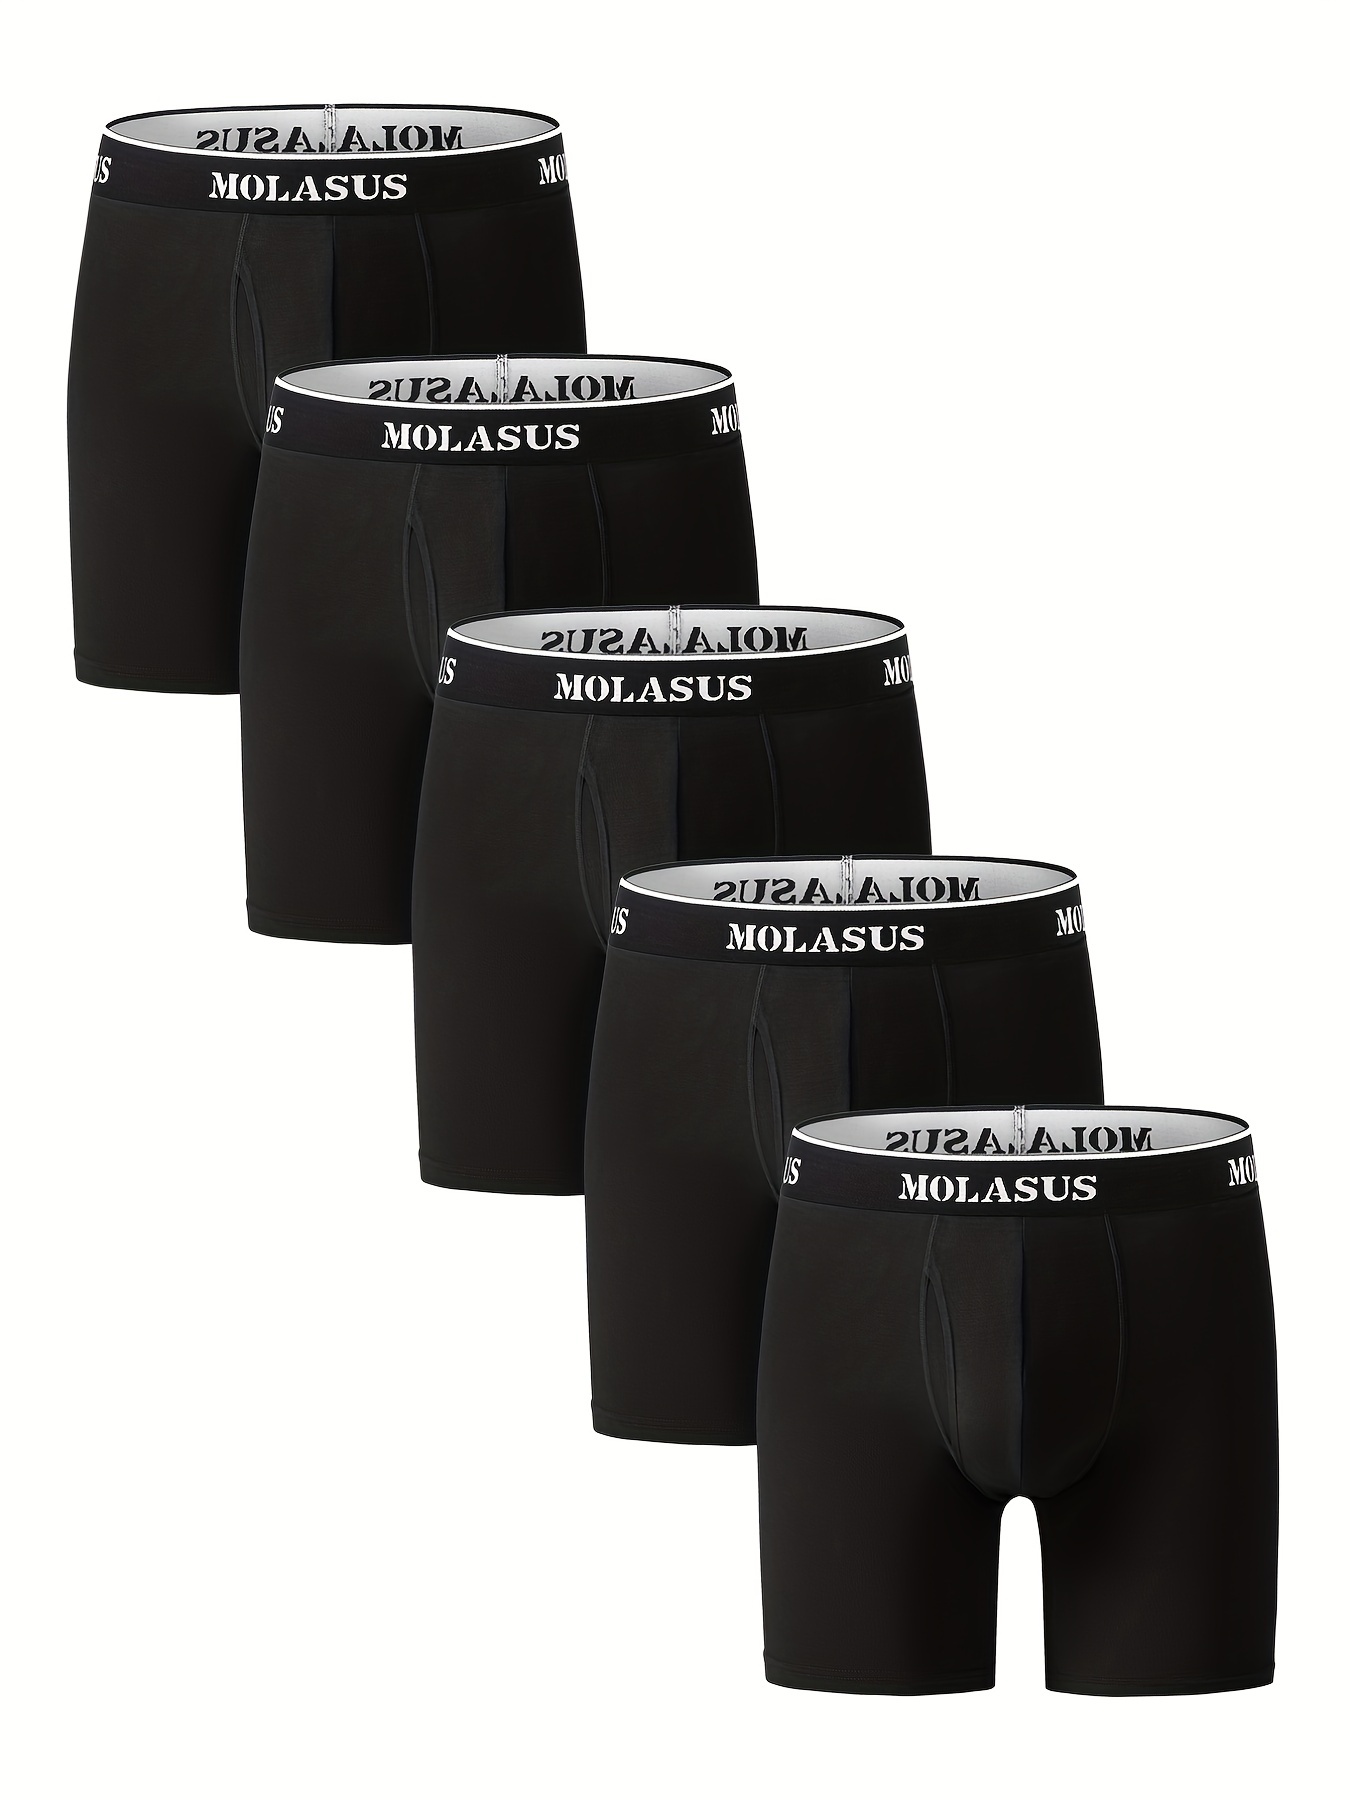 Calvin Klein Mens Underwear Cotton Stretch Boxer Briefs,Black s/p